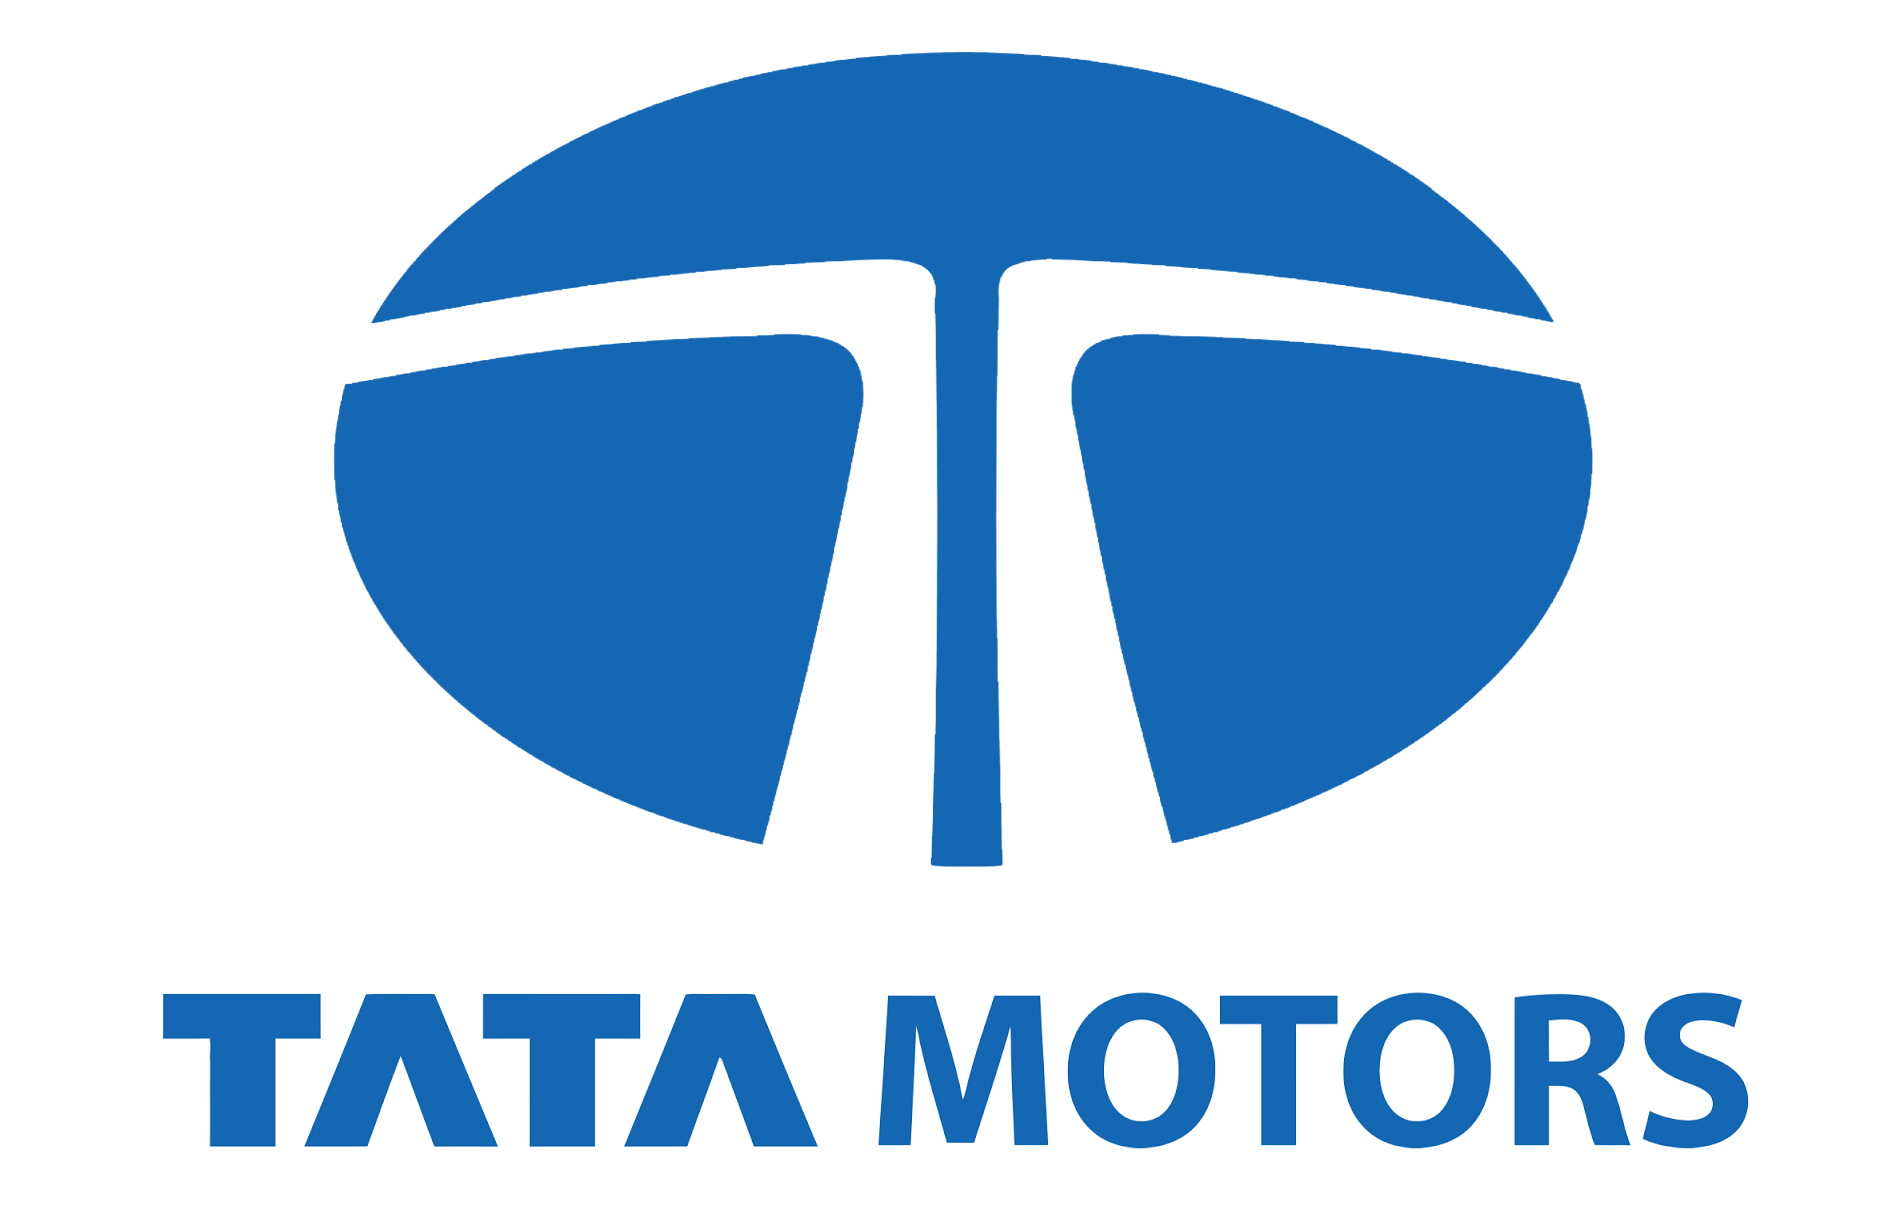 Tata Motors Cars Showroom - Cauvery Motors Pvt Ltd|Repair Services|Automotive